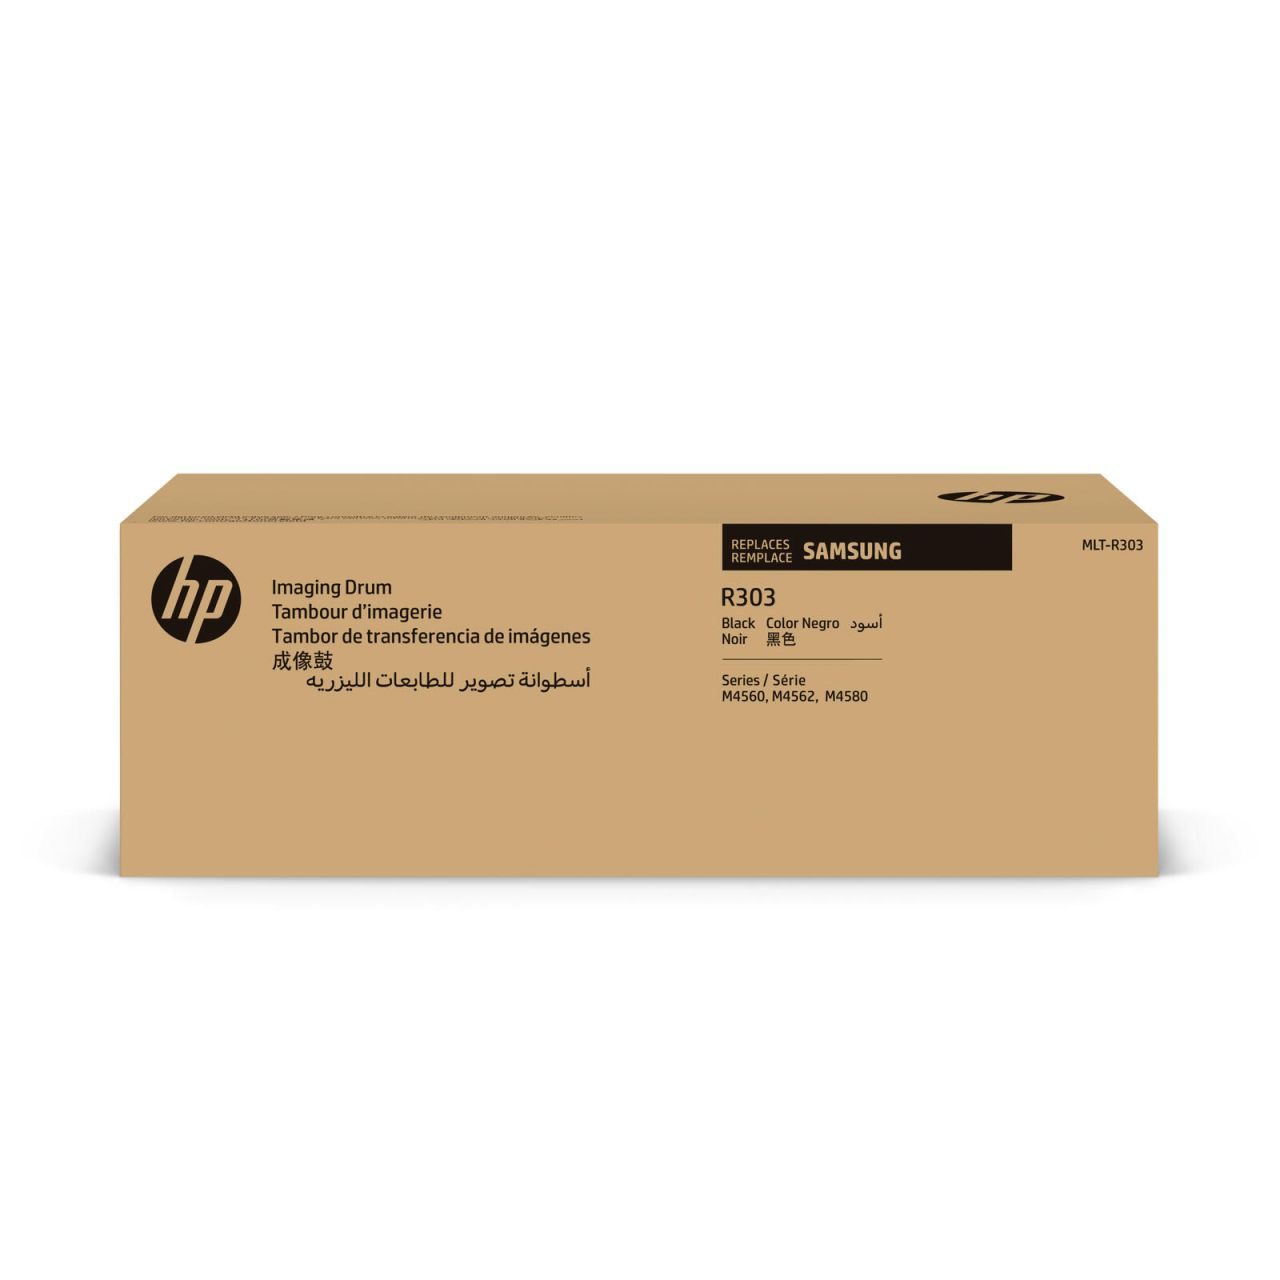 HP Original MLT-R303 Trommeleinheit 100.000 Seiten (MLT-R303/SEE) für ProXpress M4580FX